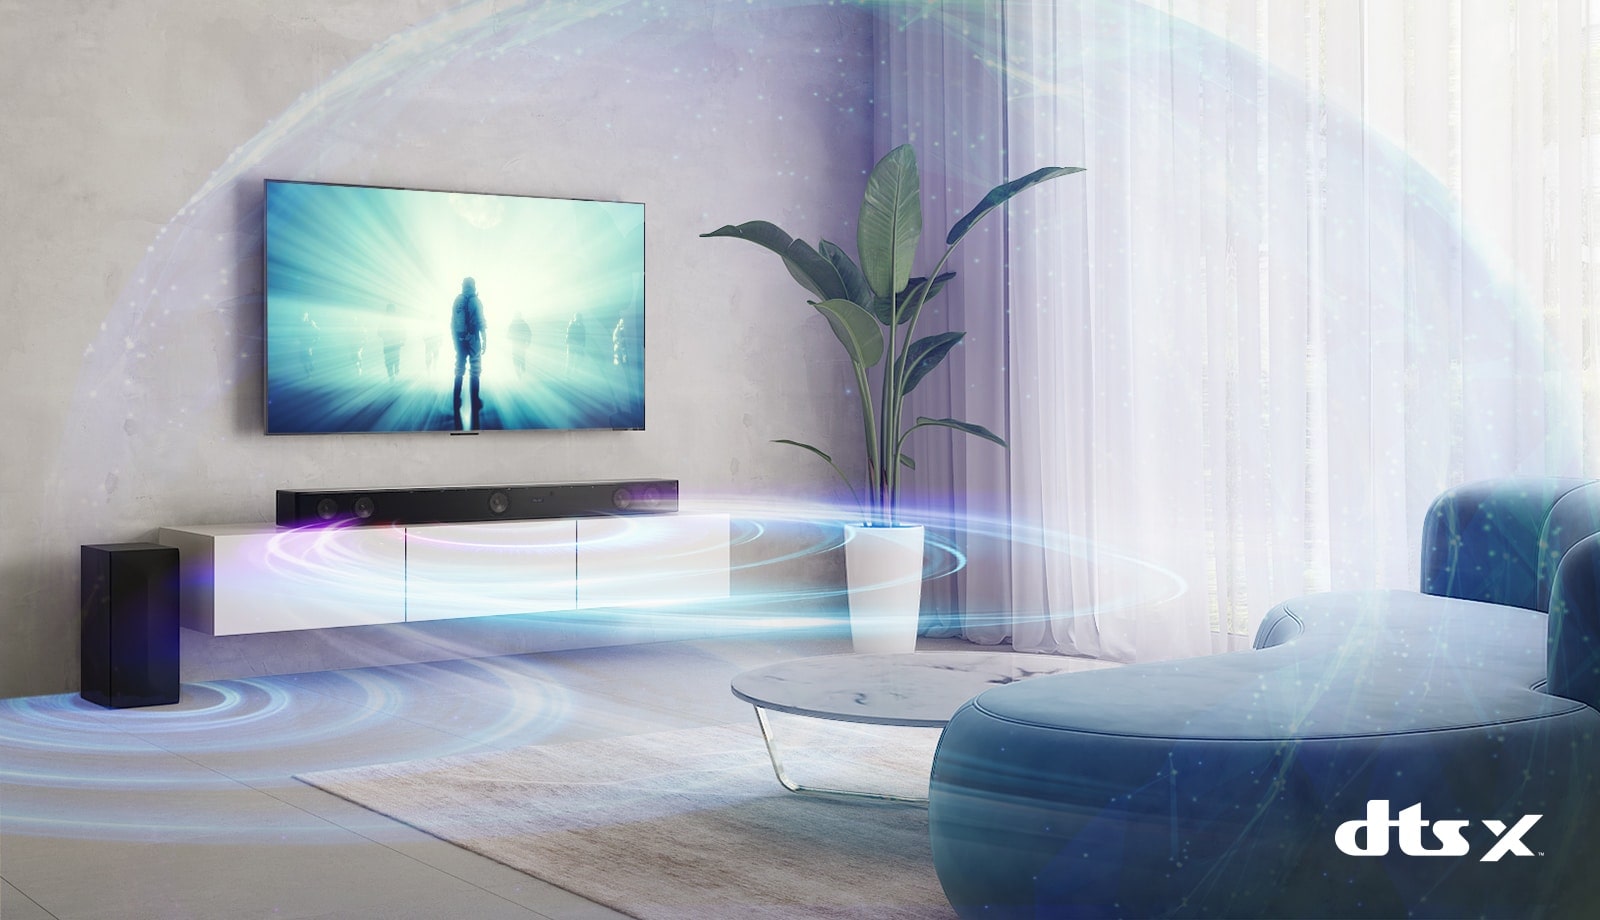 در اتاق نشیمن، تلویزیون ال‌جی روی دیوار نصب شده است. فیلم سینمایی روی صفحه تلویزیون در حال پخش است. ساندبار ال‌جی درست در زیر تلویزیون روی یک قفسه بژ با بلندگوی عقب در سمت چپ قرار دارد. لوگوی Dolby Atmos Virtual در پایین و سمت راست تصویر مشاهده می‌شود.